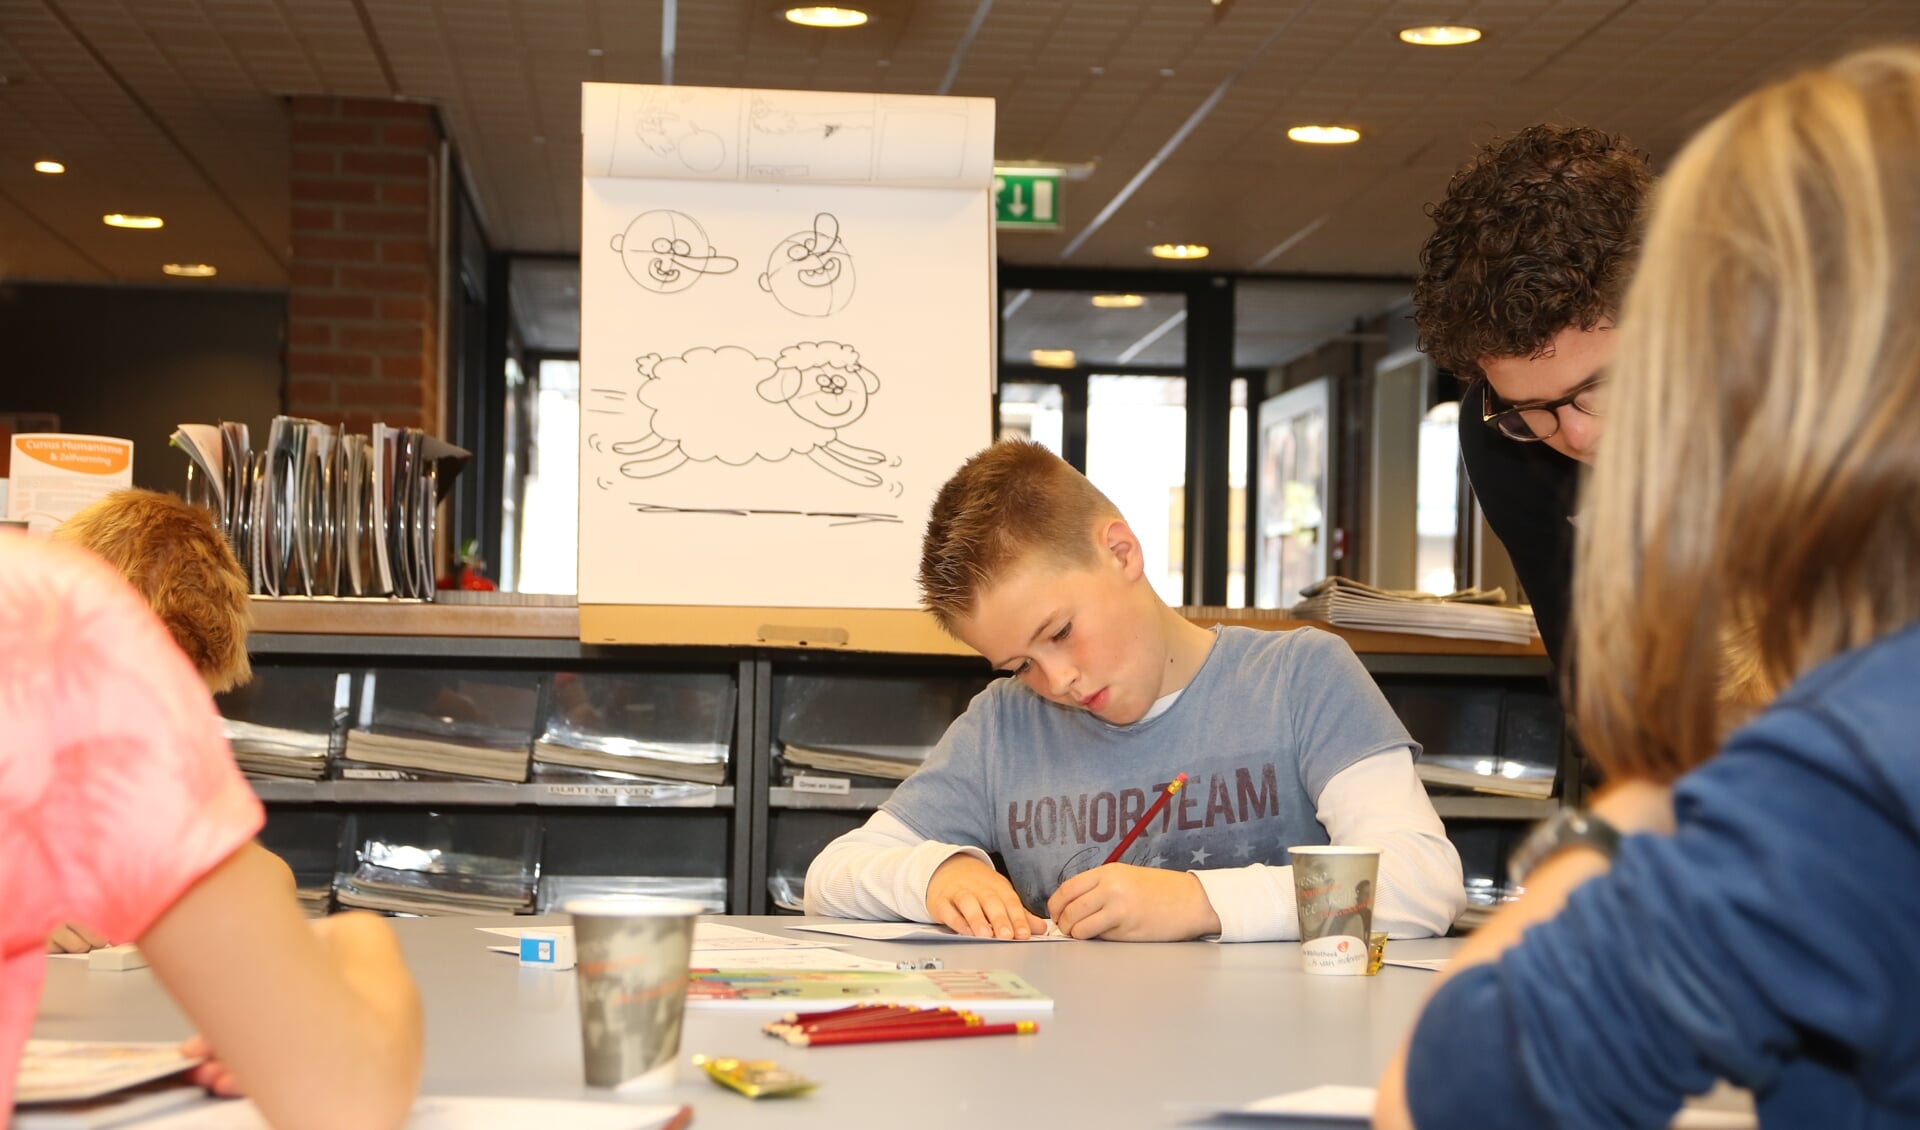 Opperste concentratie bij een van de deelnemers aan de workshop striptekenen.